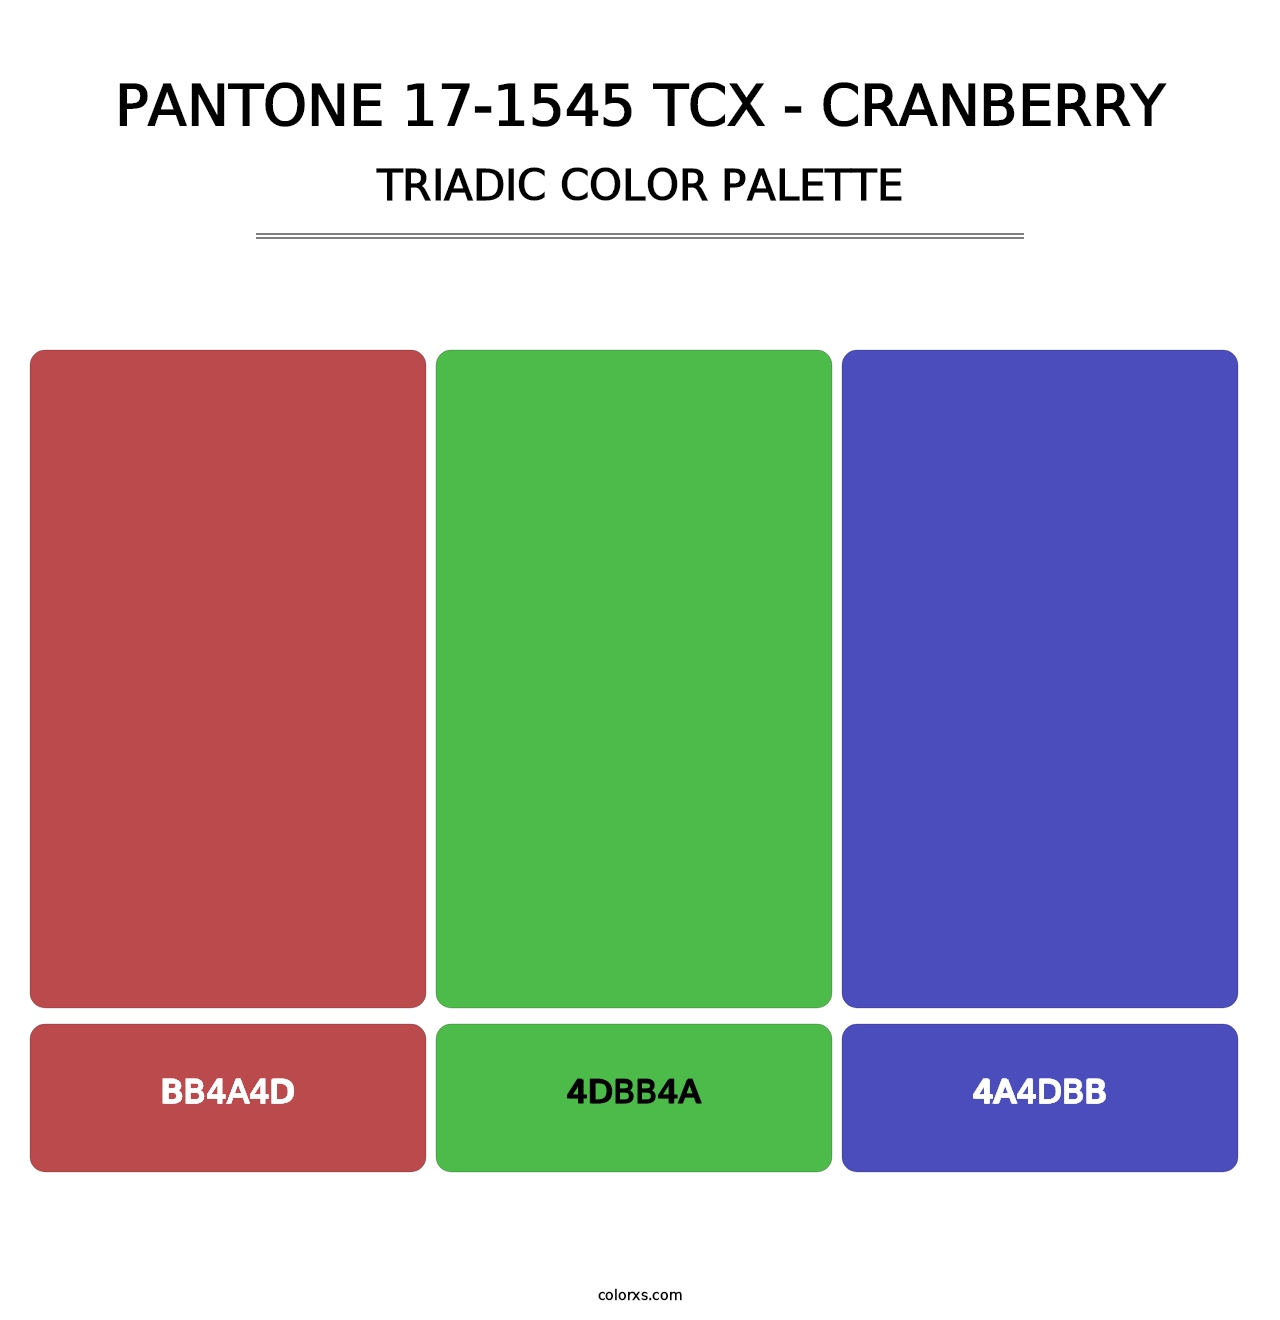 PANTONE 17-1545 TCX - Cranberry - Triadic Color Palette